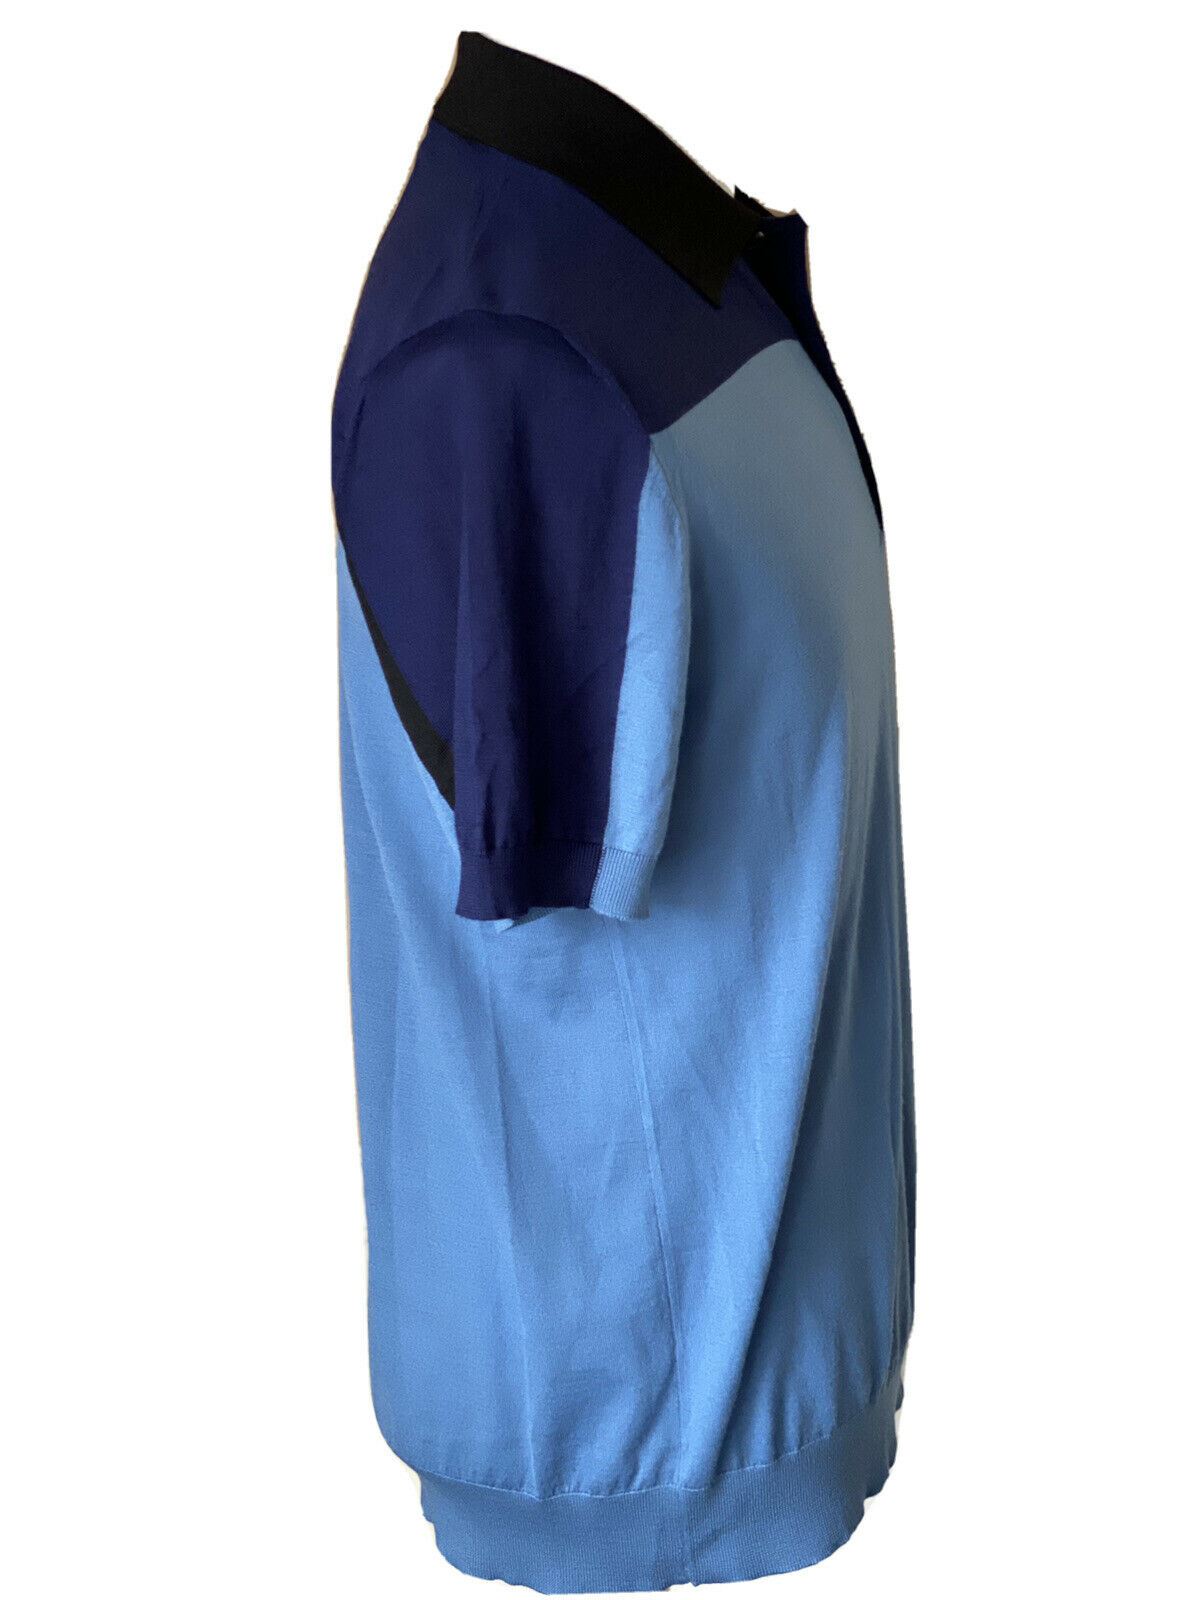 СЗТ $980 Prada шерстяная синяя рубашка-поло с коротким рукавом UMA950 Сделано в Италии